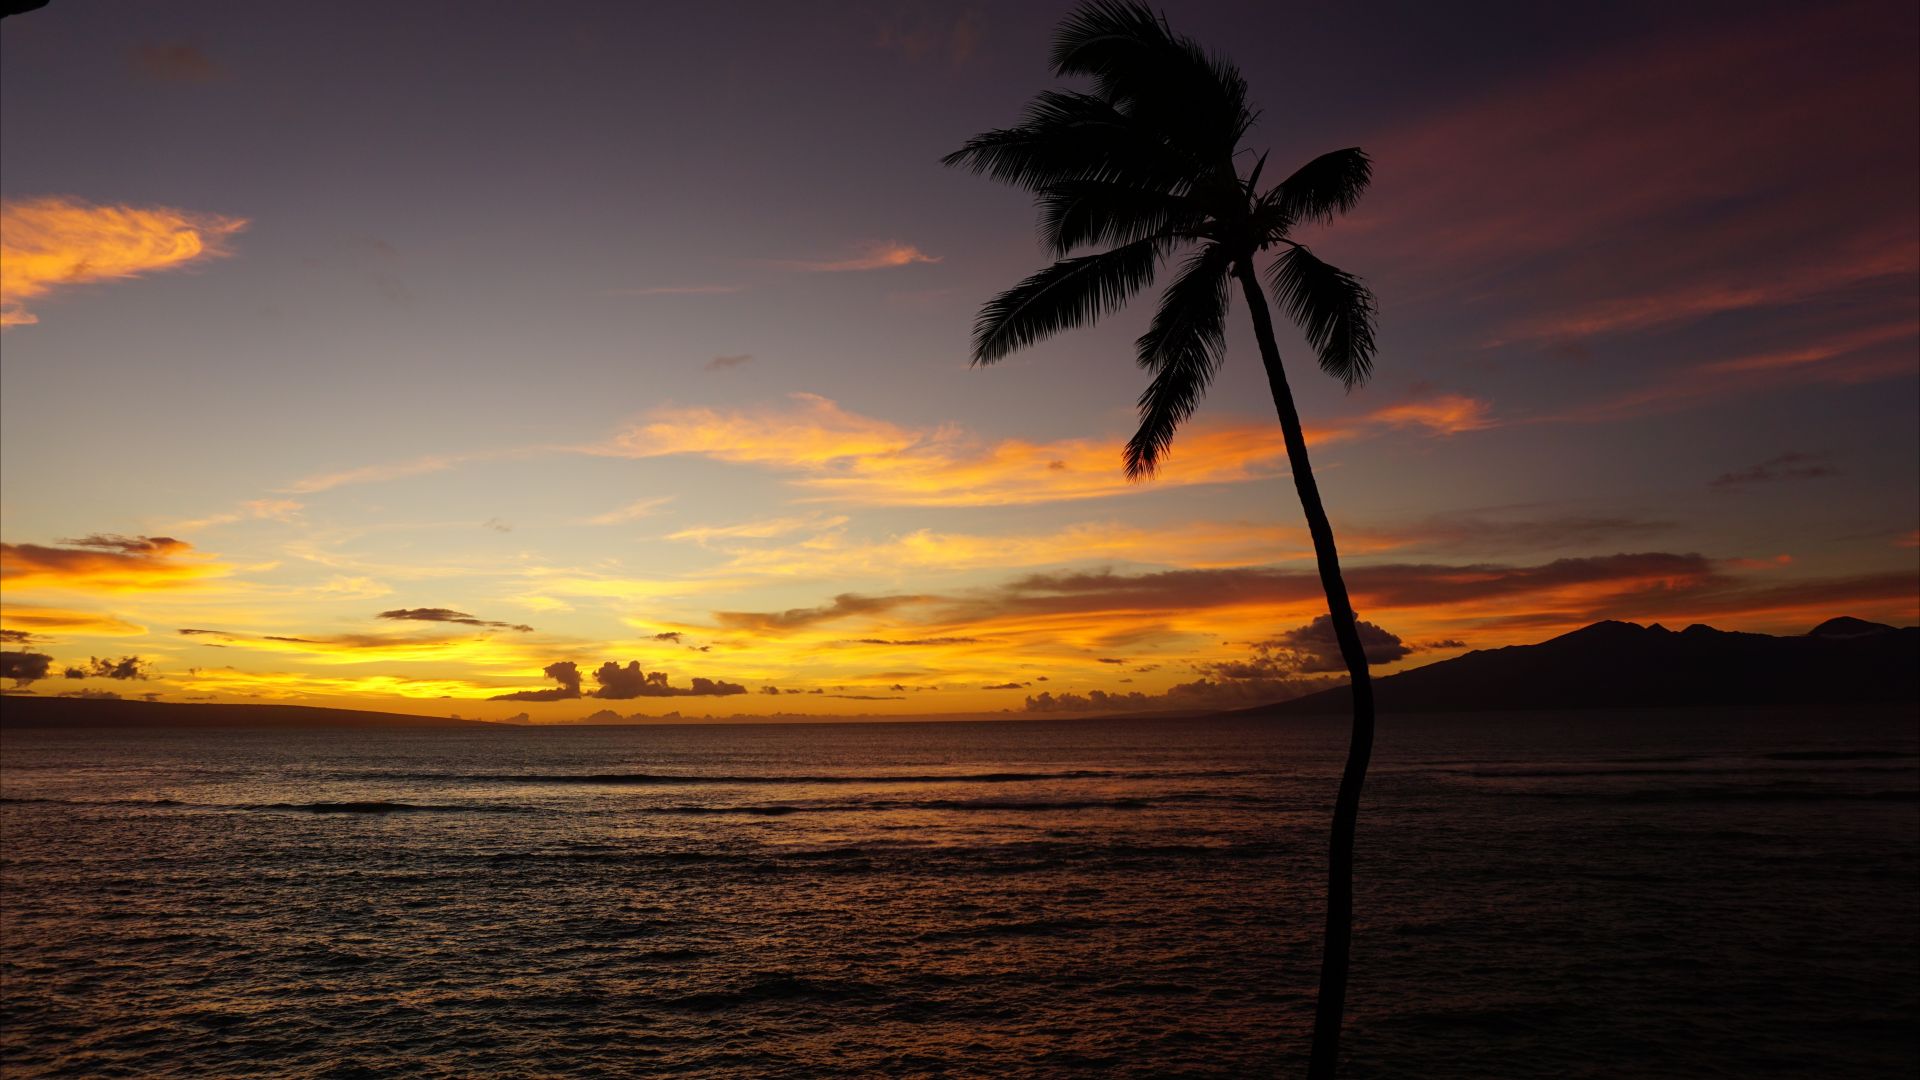 Мауи, Maui, Hawaii, ocean, palm, sunset, 5k (horizontal)